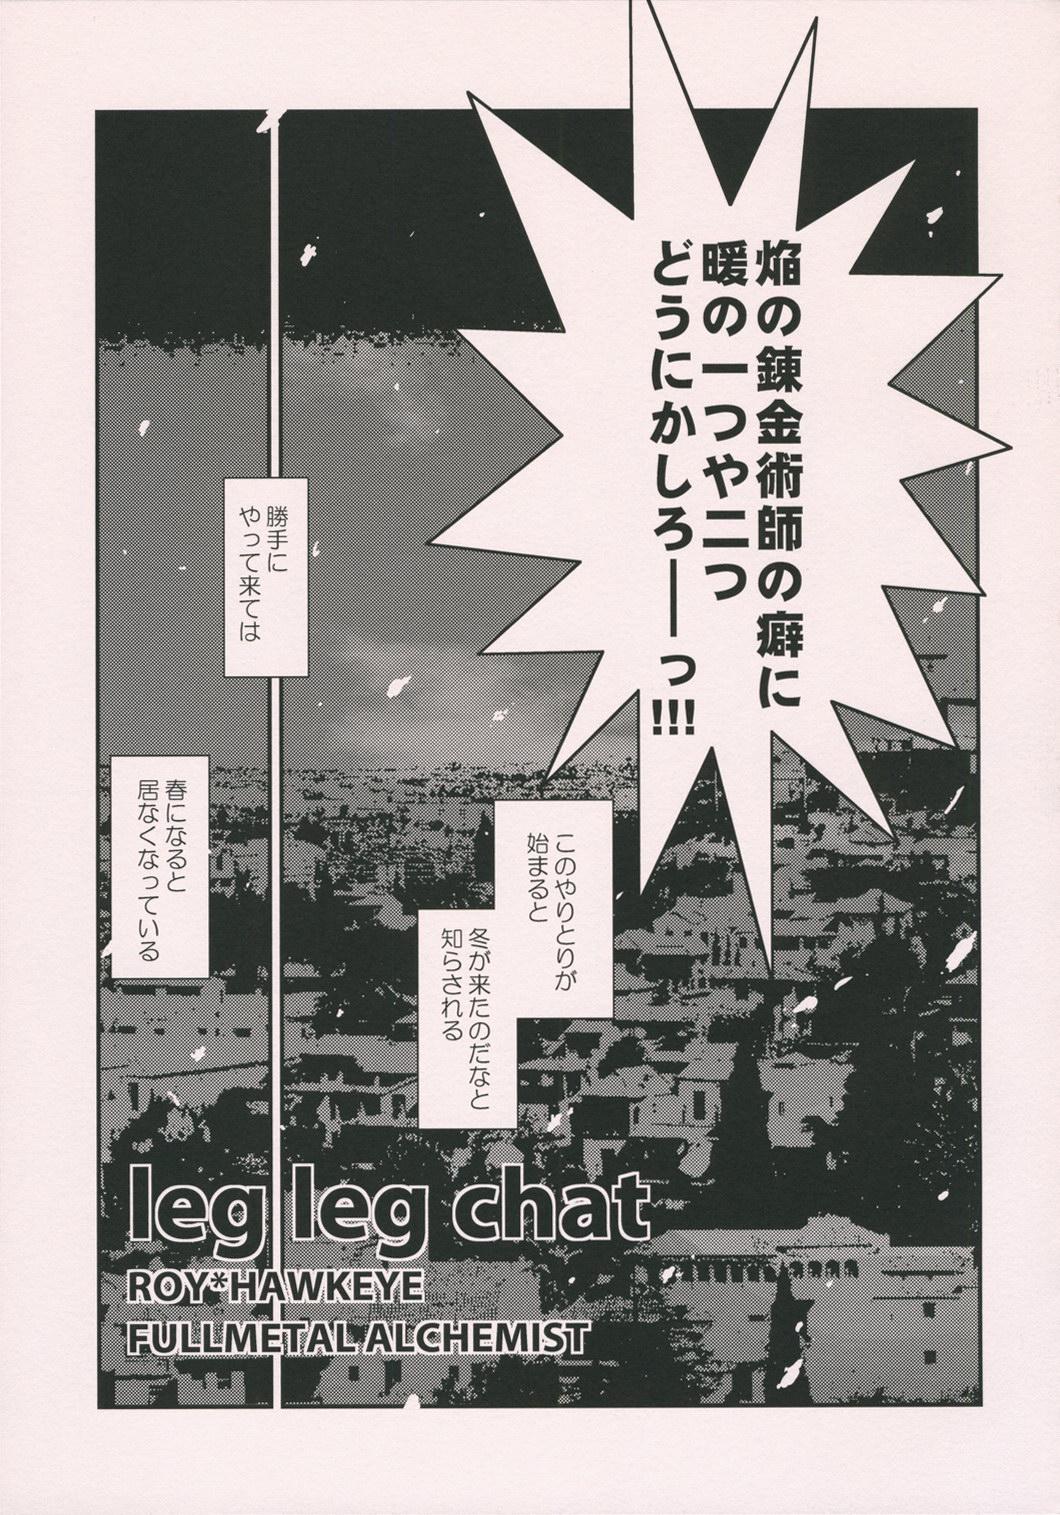 leg leg chat 5